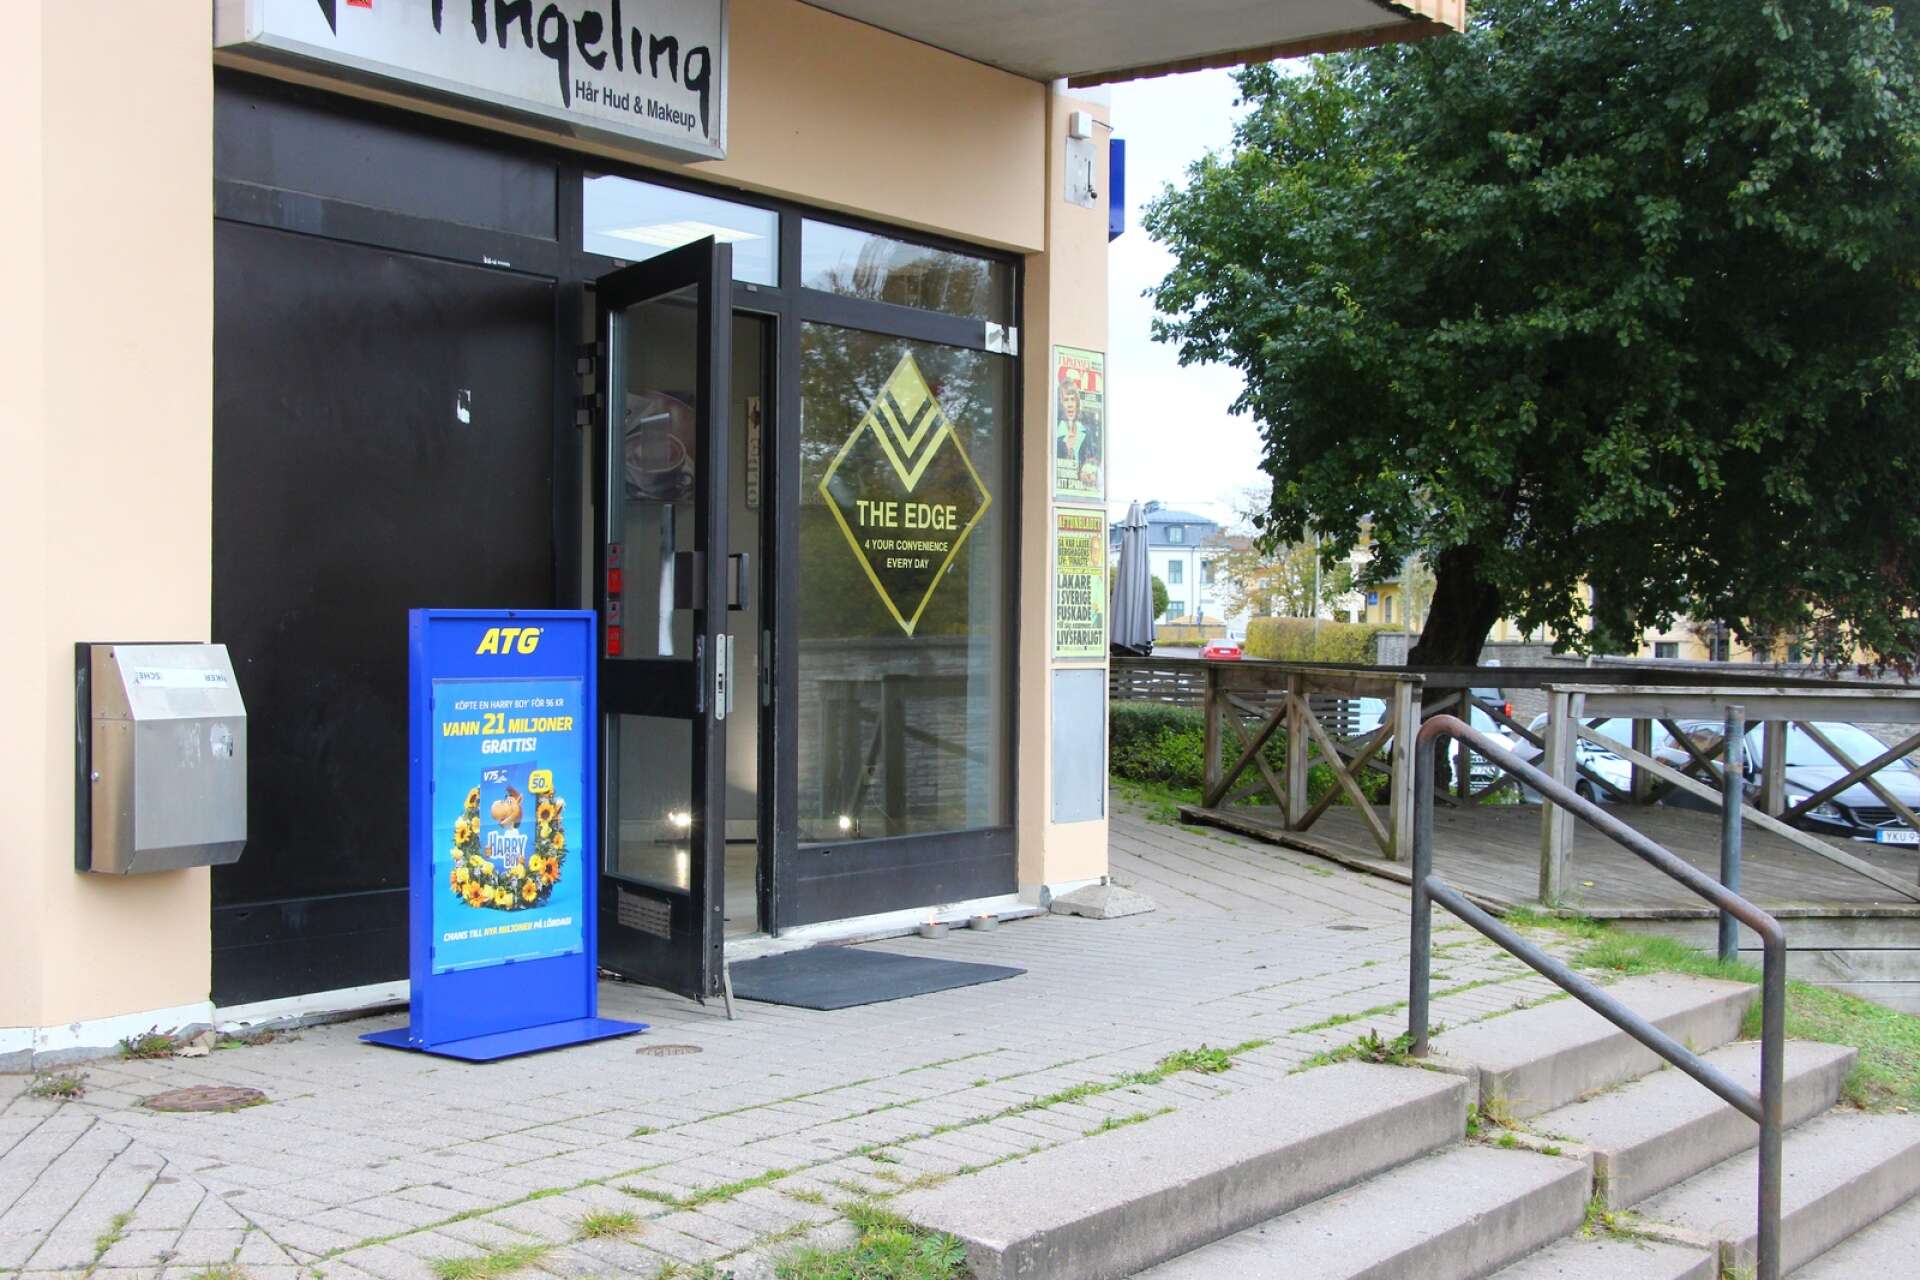 Lokalen på Mariestadsvägen har använts som spelbutik i många år.